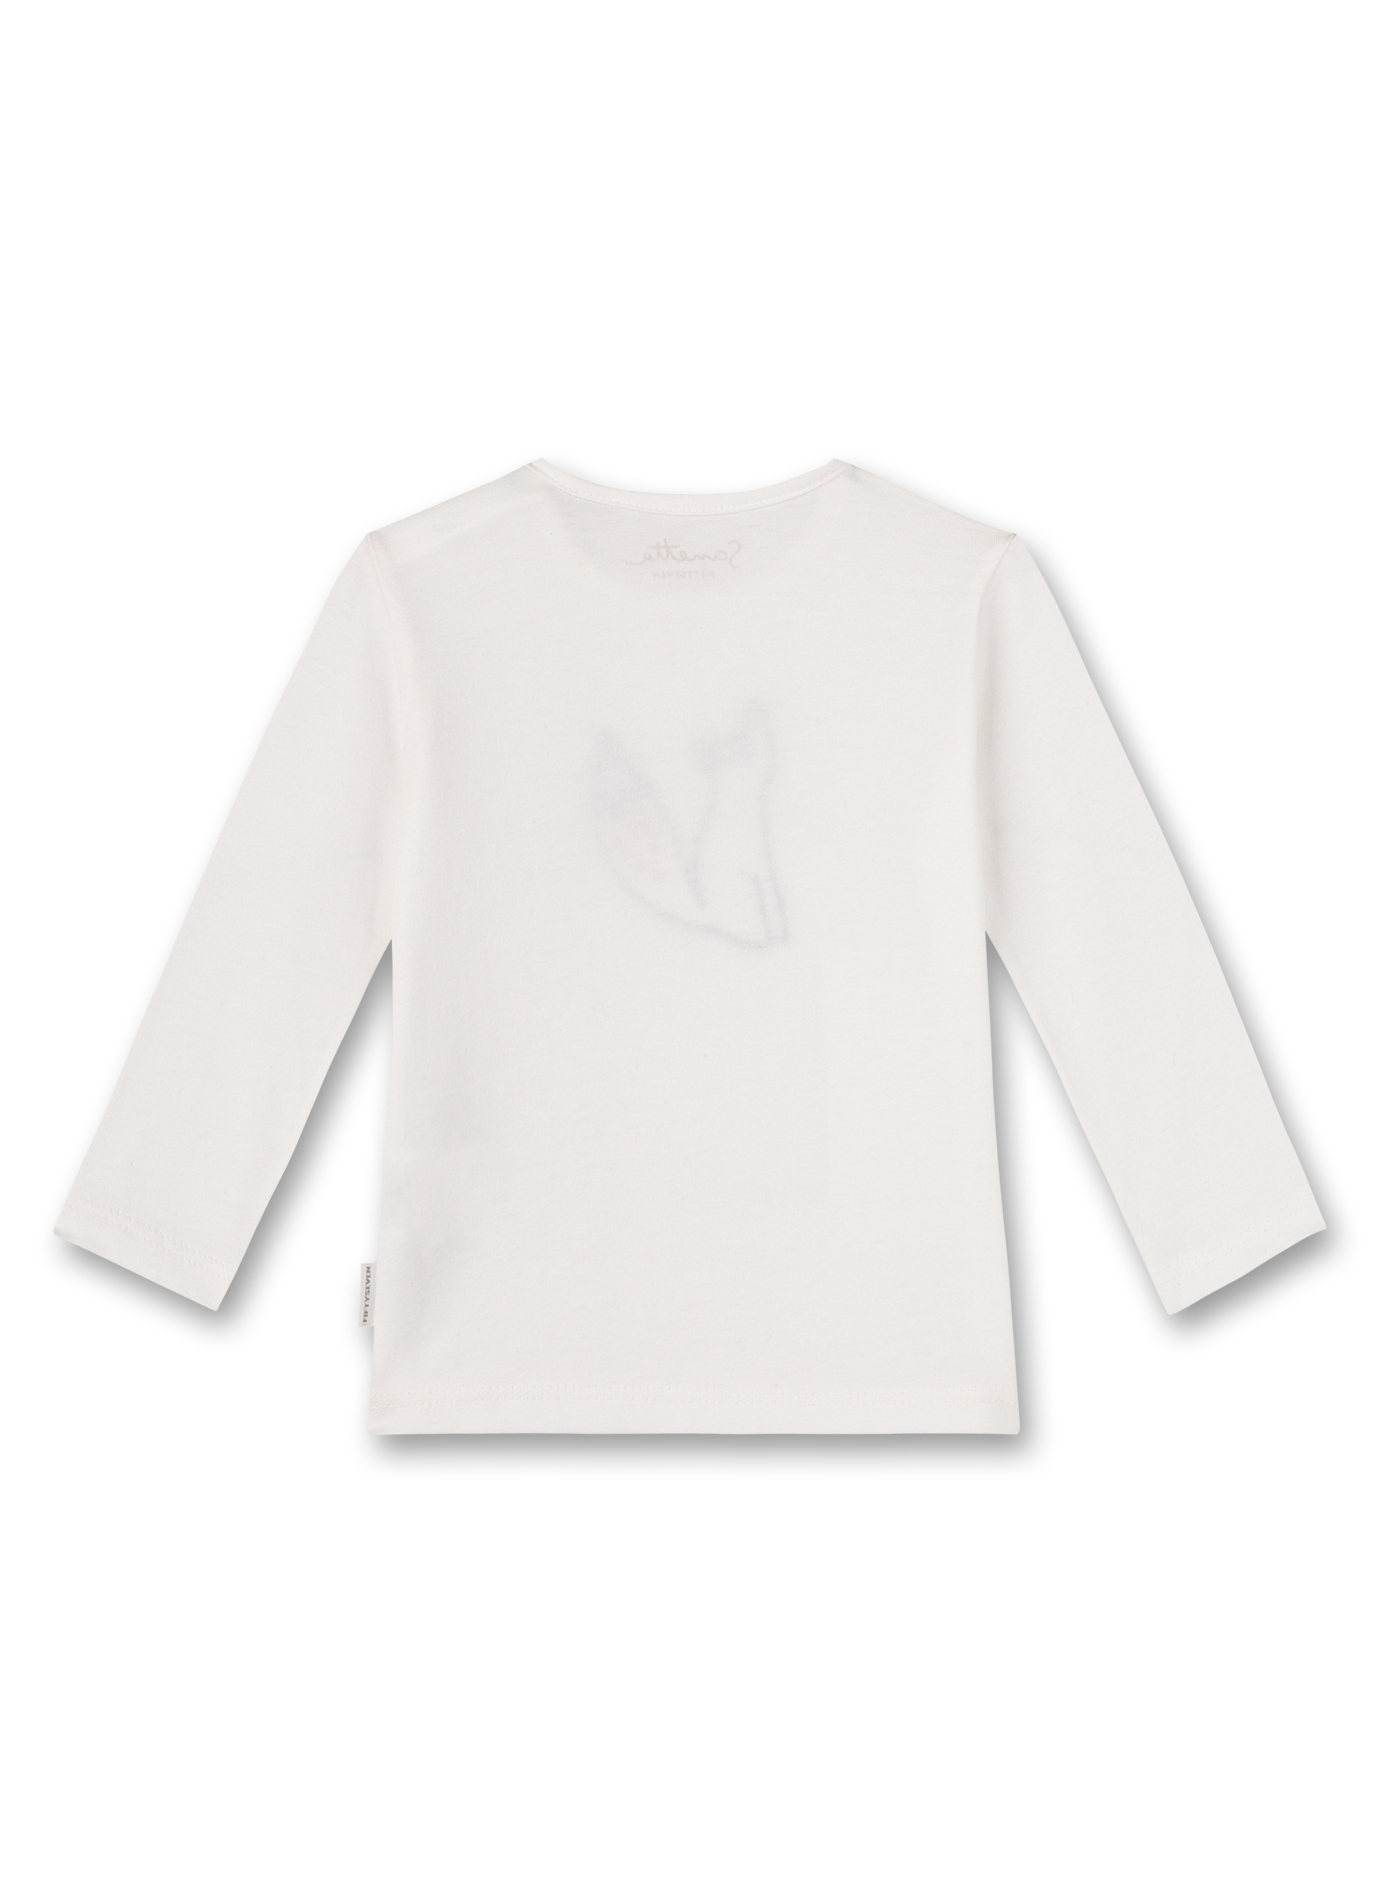 Jungen-Shirt langarm Off-White Clever Fox